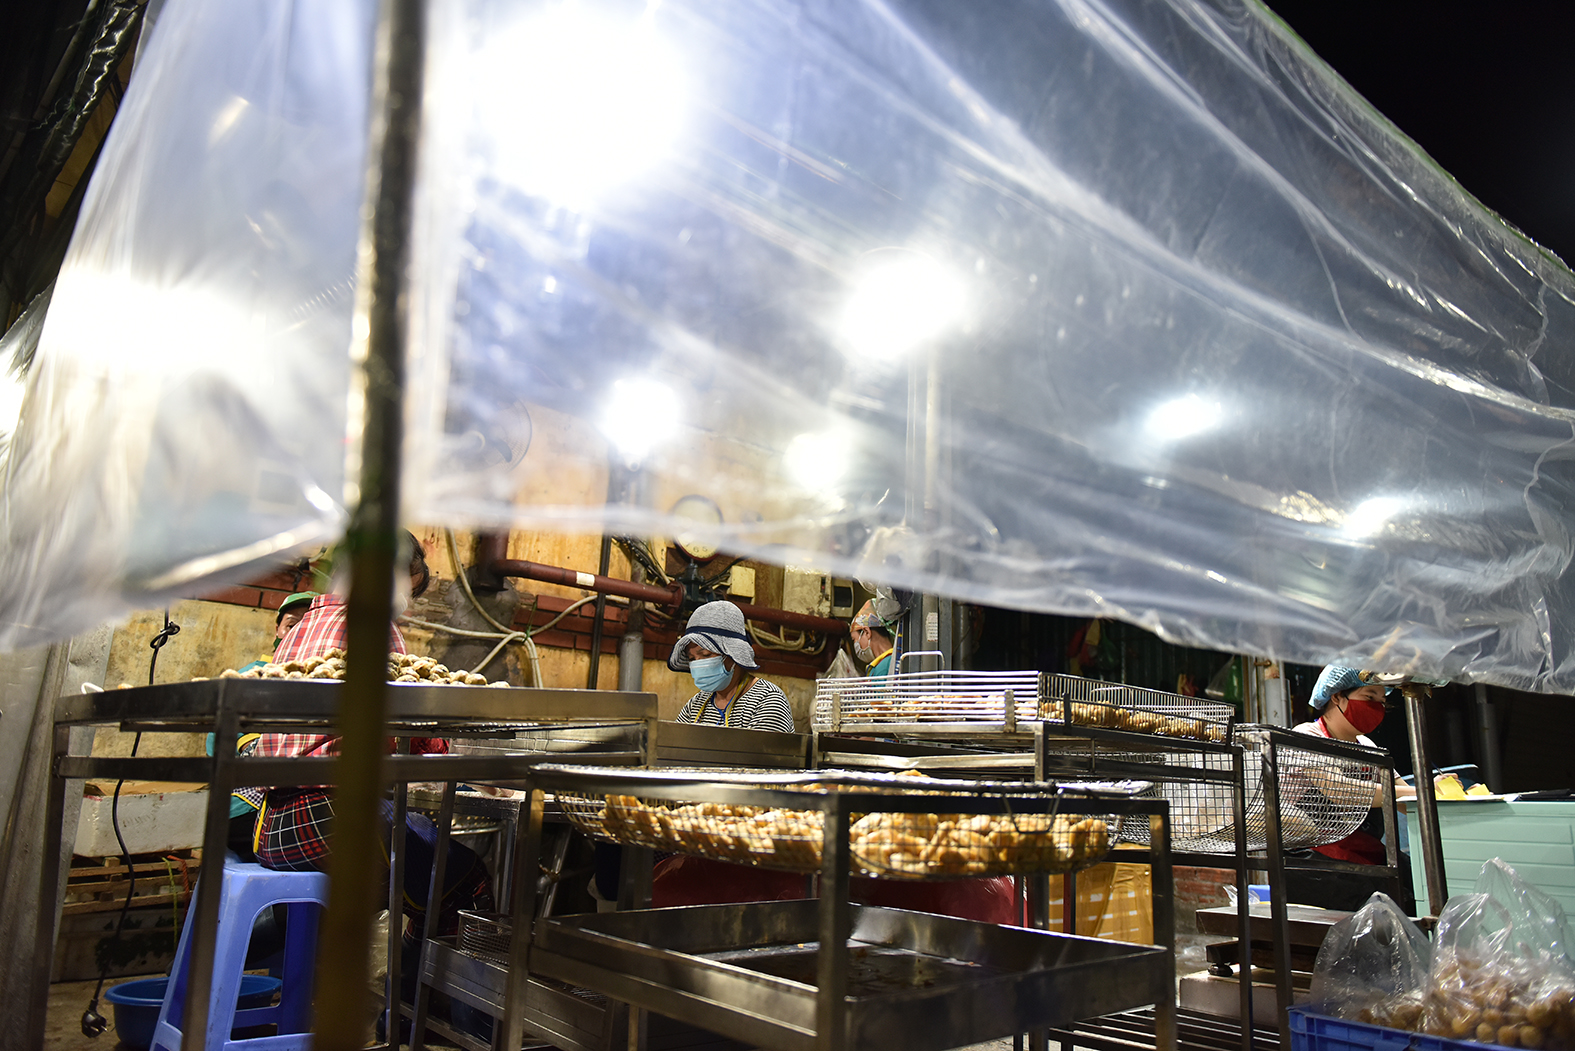 Một gian hàng bán chả cá, chả mực được quây kín và chế biến ngay tại chợ.